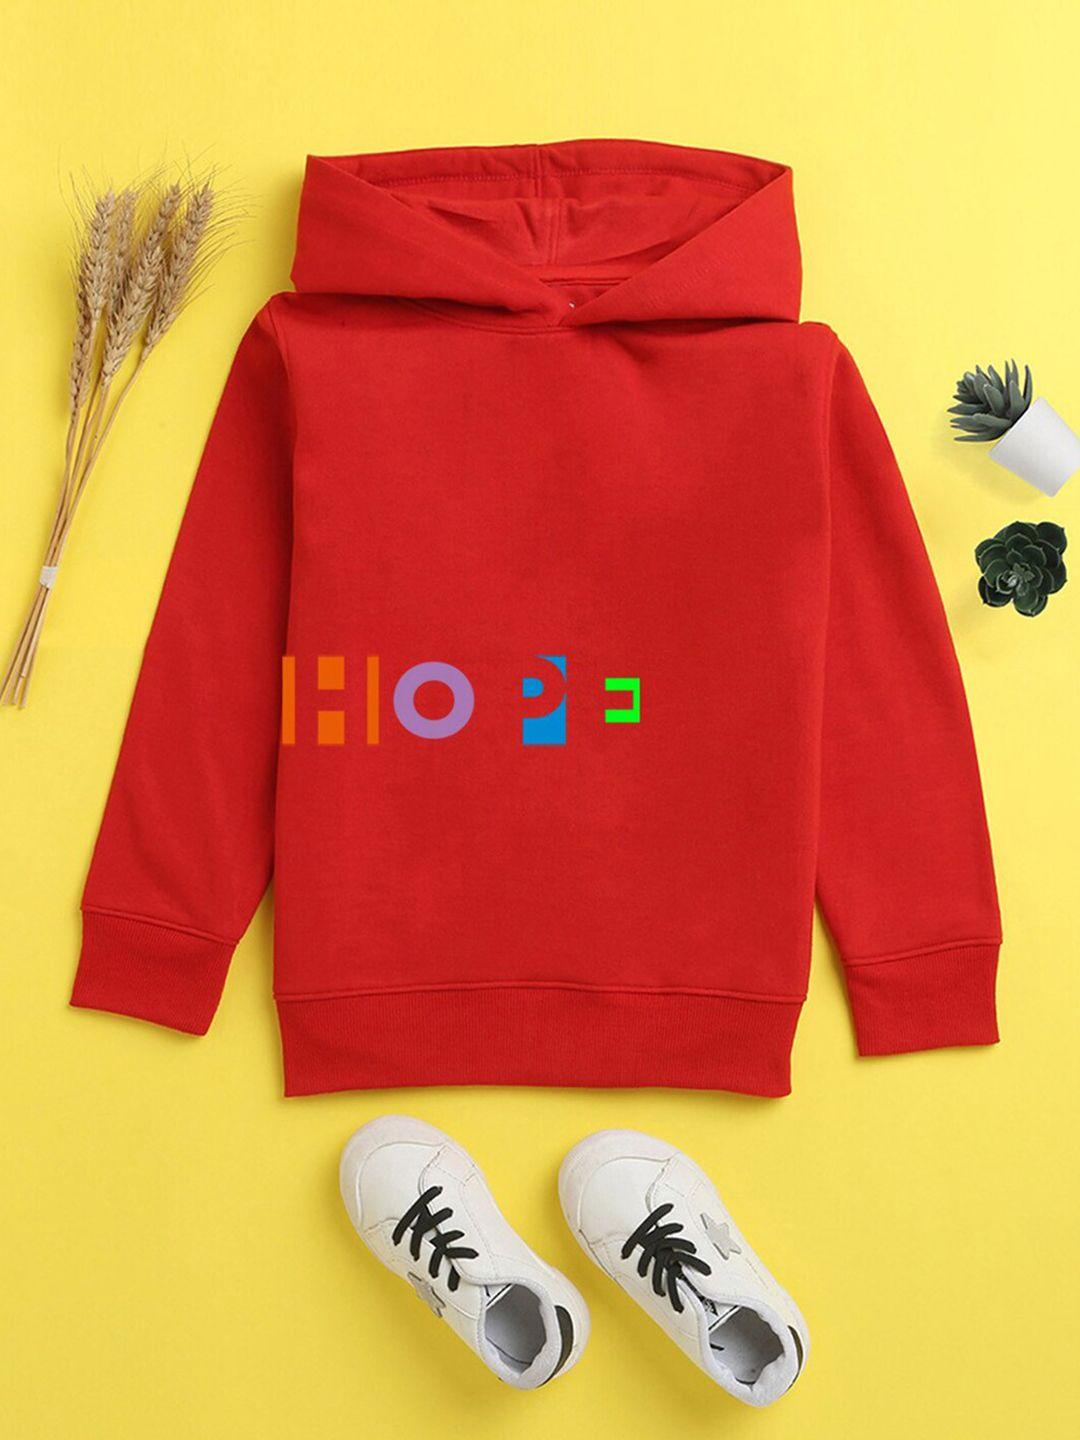 nusyl unisex kids printed hooded sweatshirt